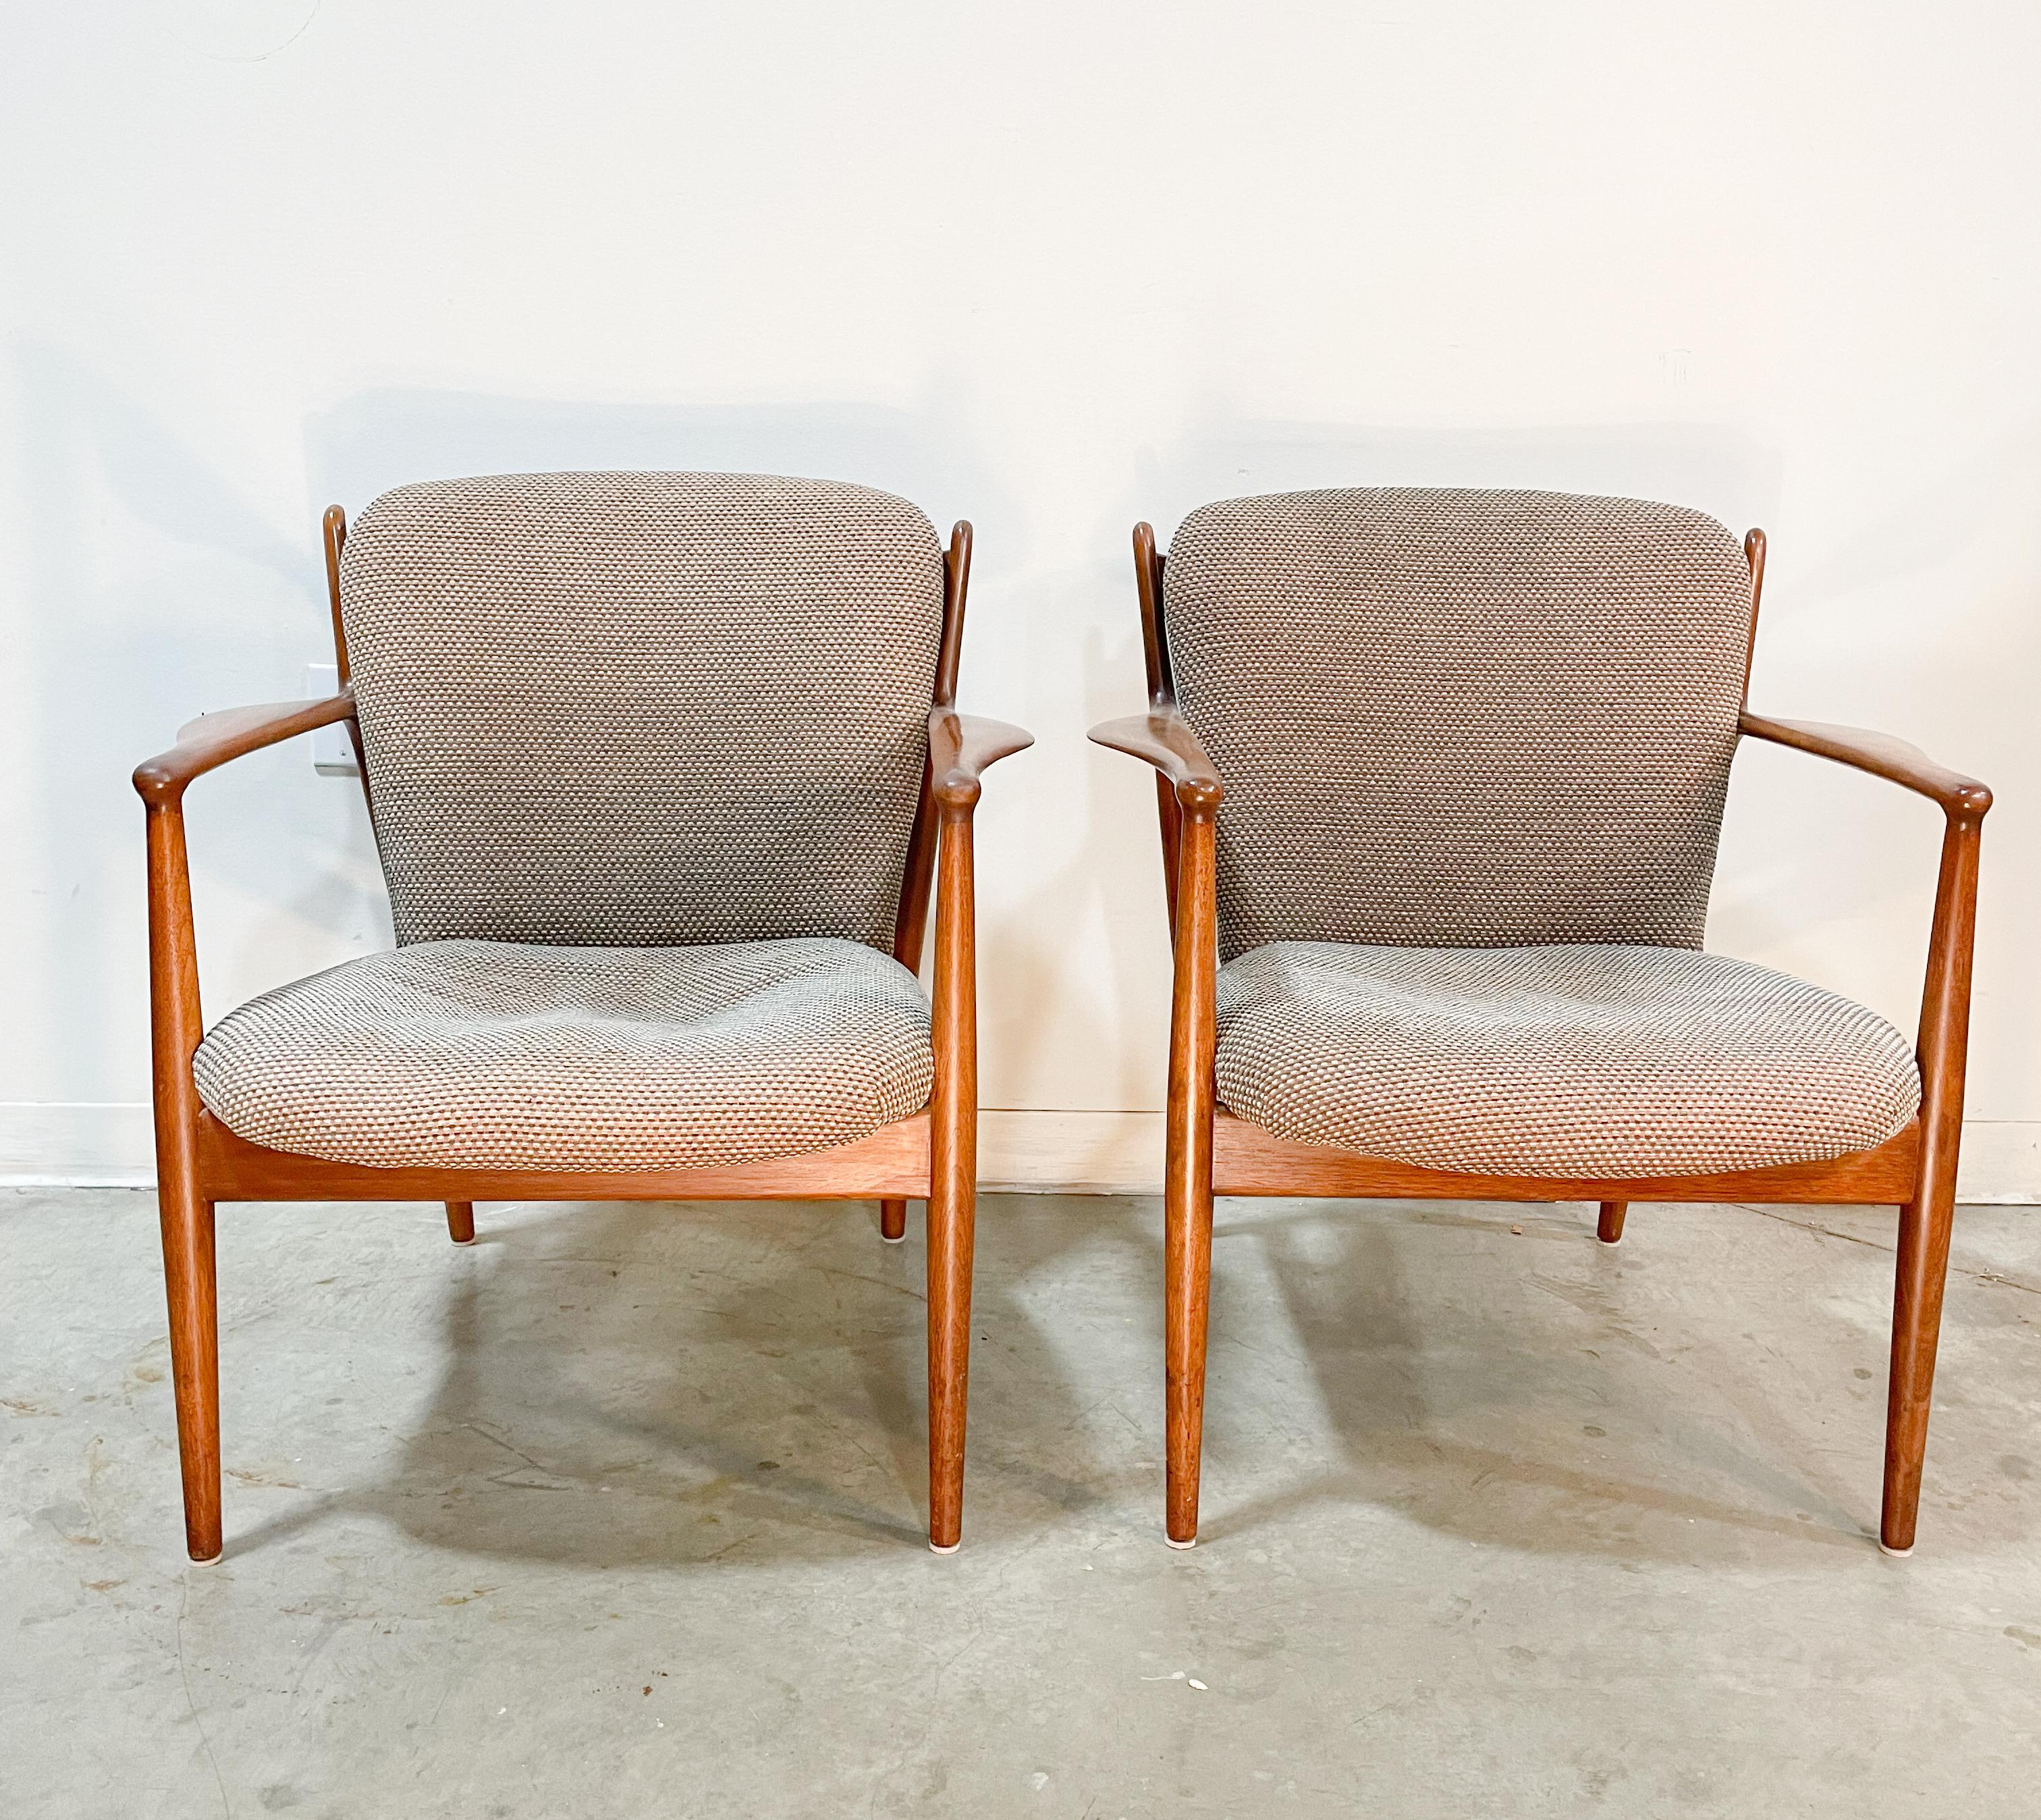 American Finn Juhl Delegate Chairs by Baker, 1950s